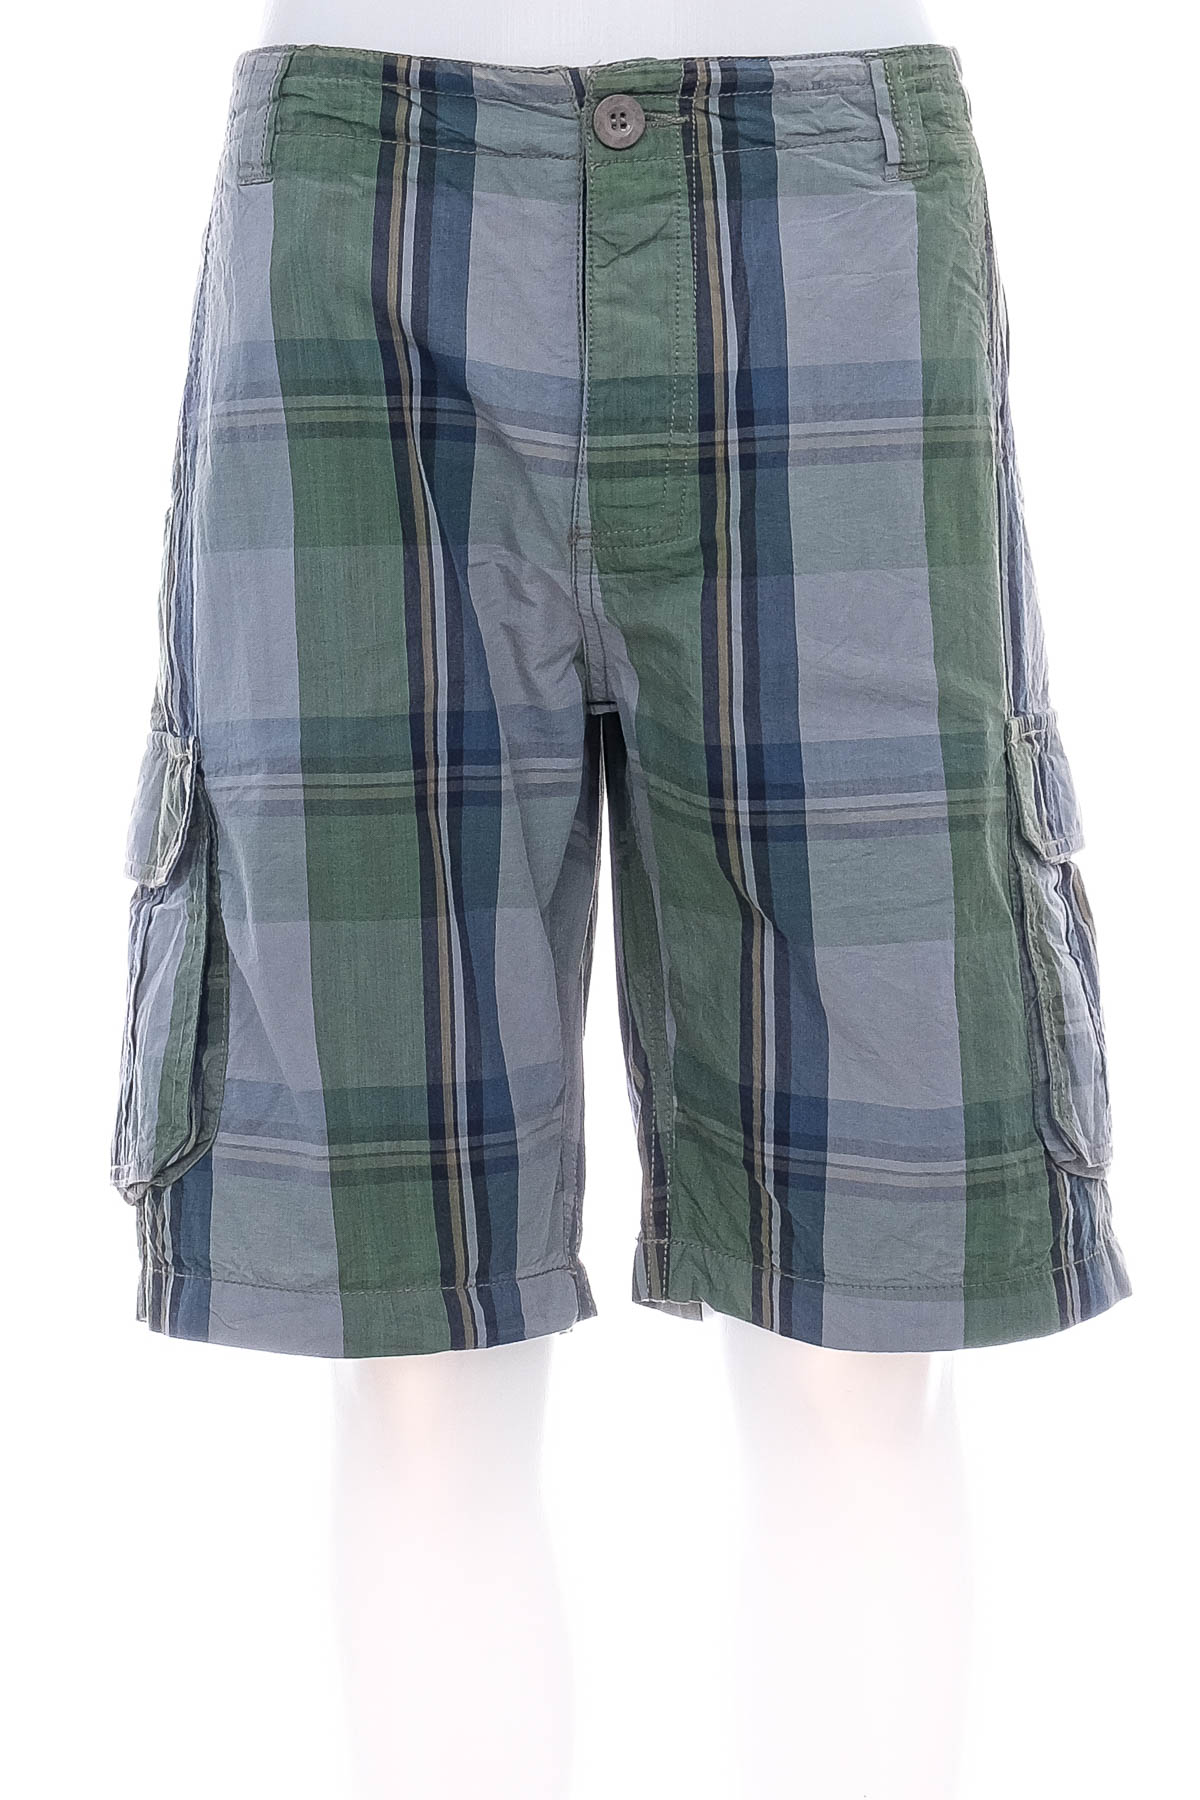 Men's shorts - CMP - 0